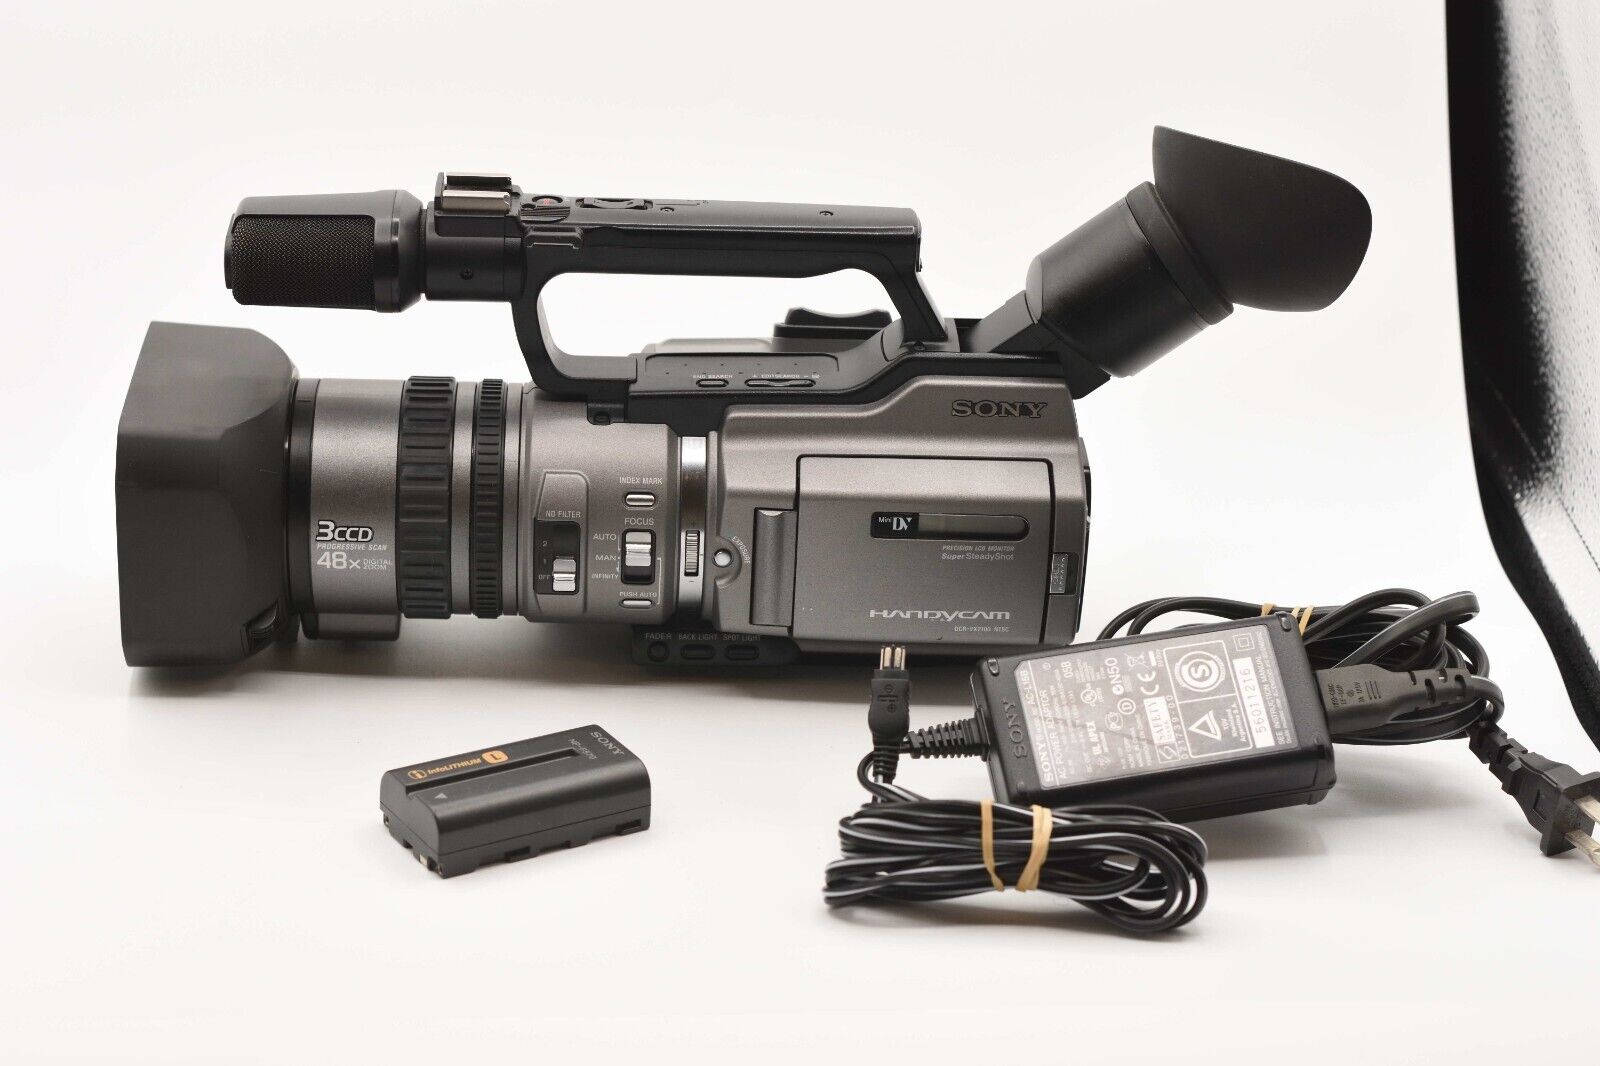 カメラ ビデオカメラ Sony DCR-VX2100 Camcorder - Black for sale online | eBay